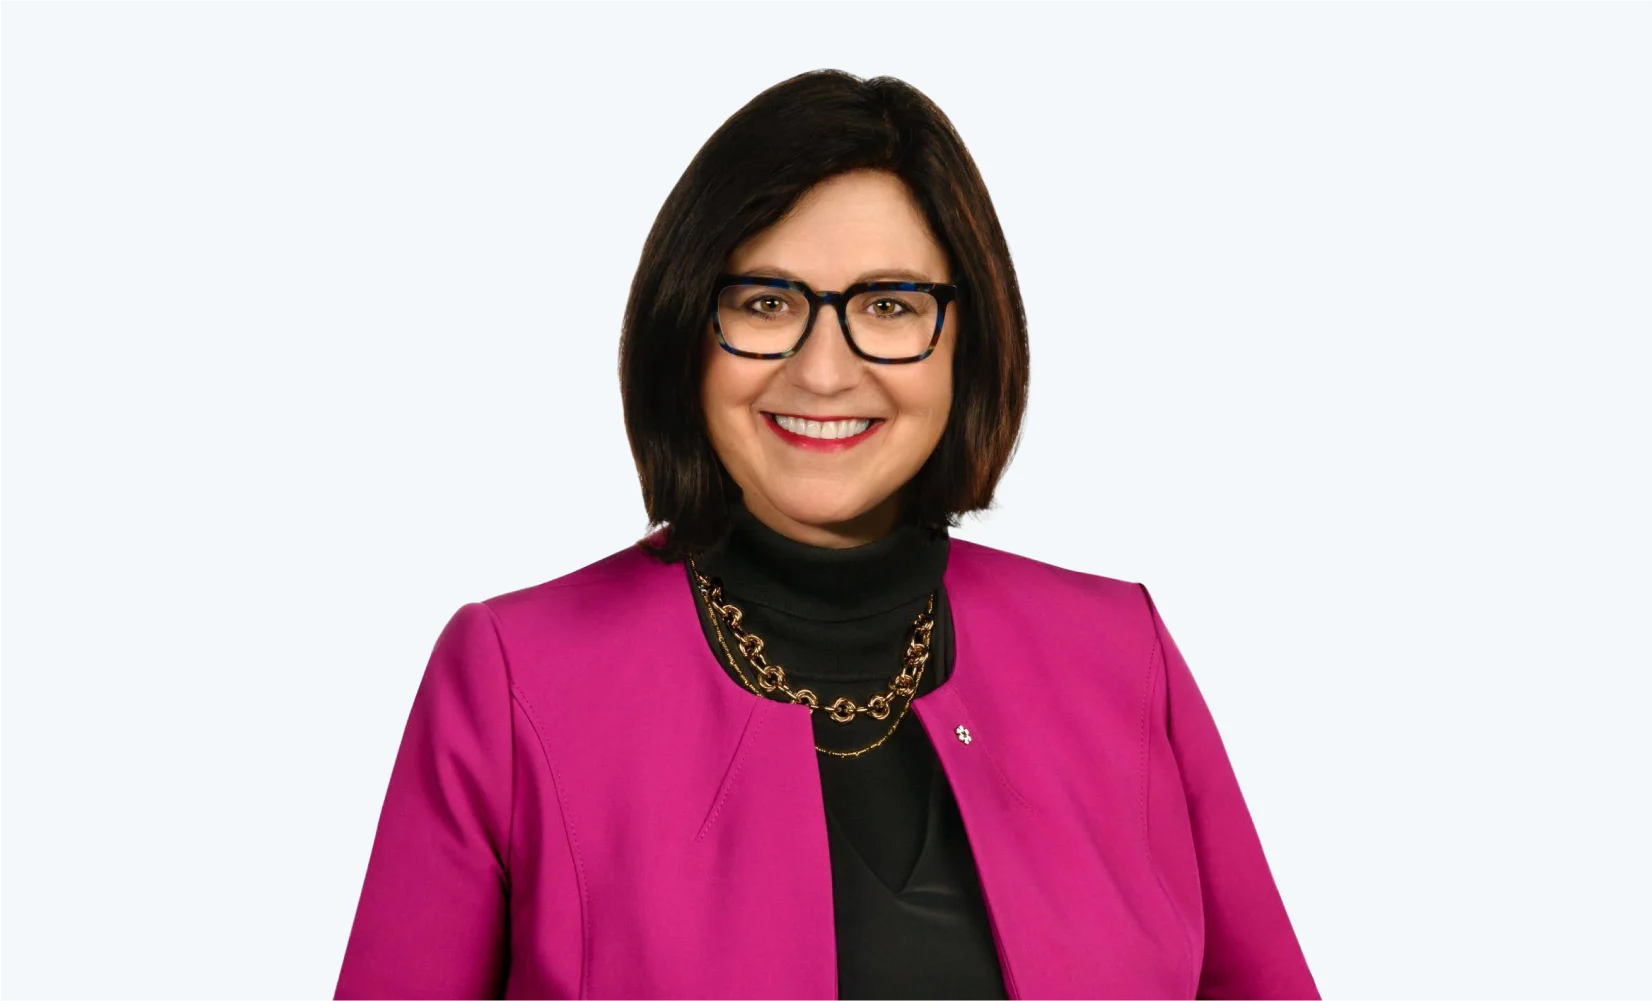 Mary Jo Haddad, présidente du comité responsable des personnes, de la culture et de la rémunération et membre du comité de gouvernance.